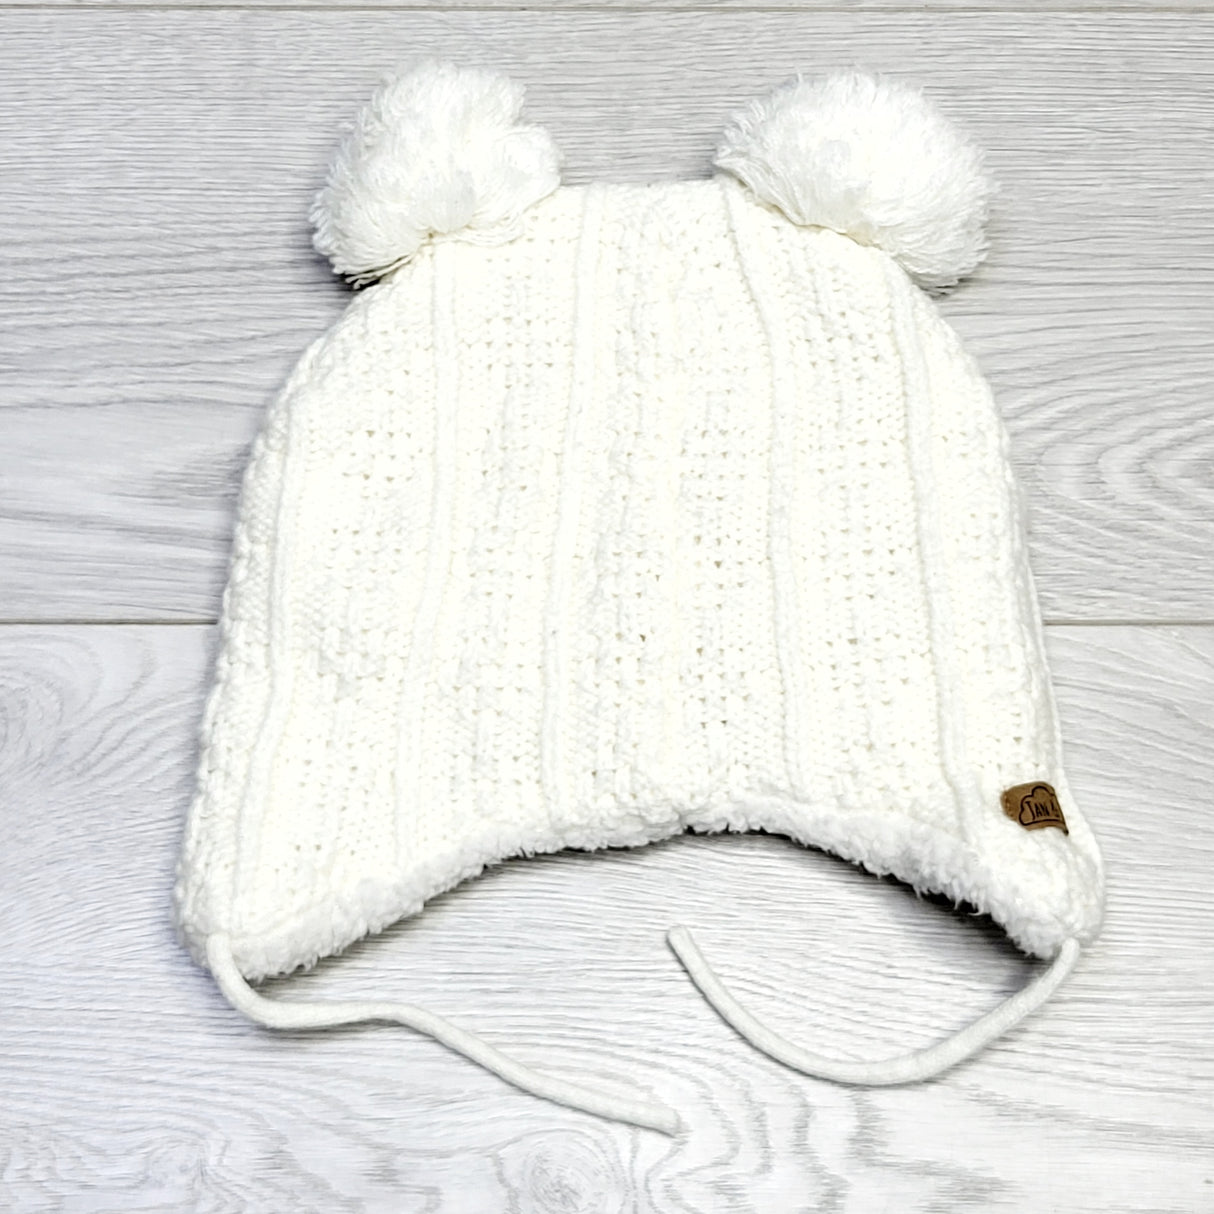 KJHN2 - Jan ans Jul white minky lined hat. Size medium (6-24 months)